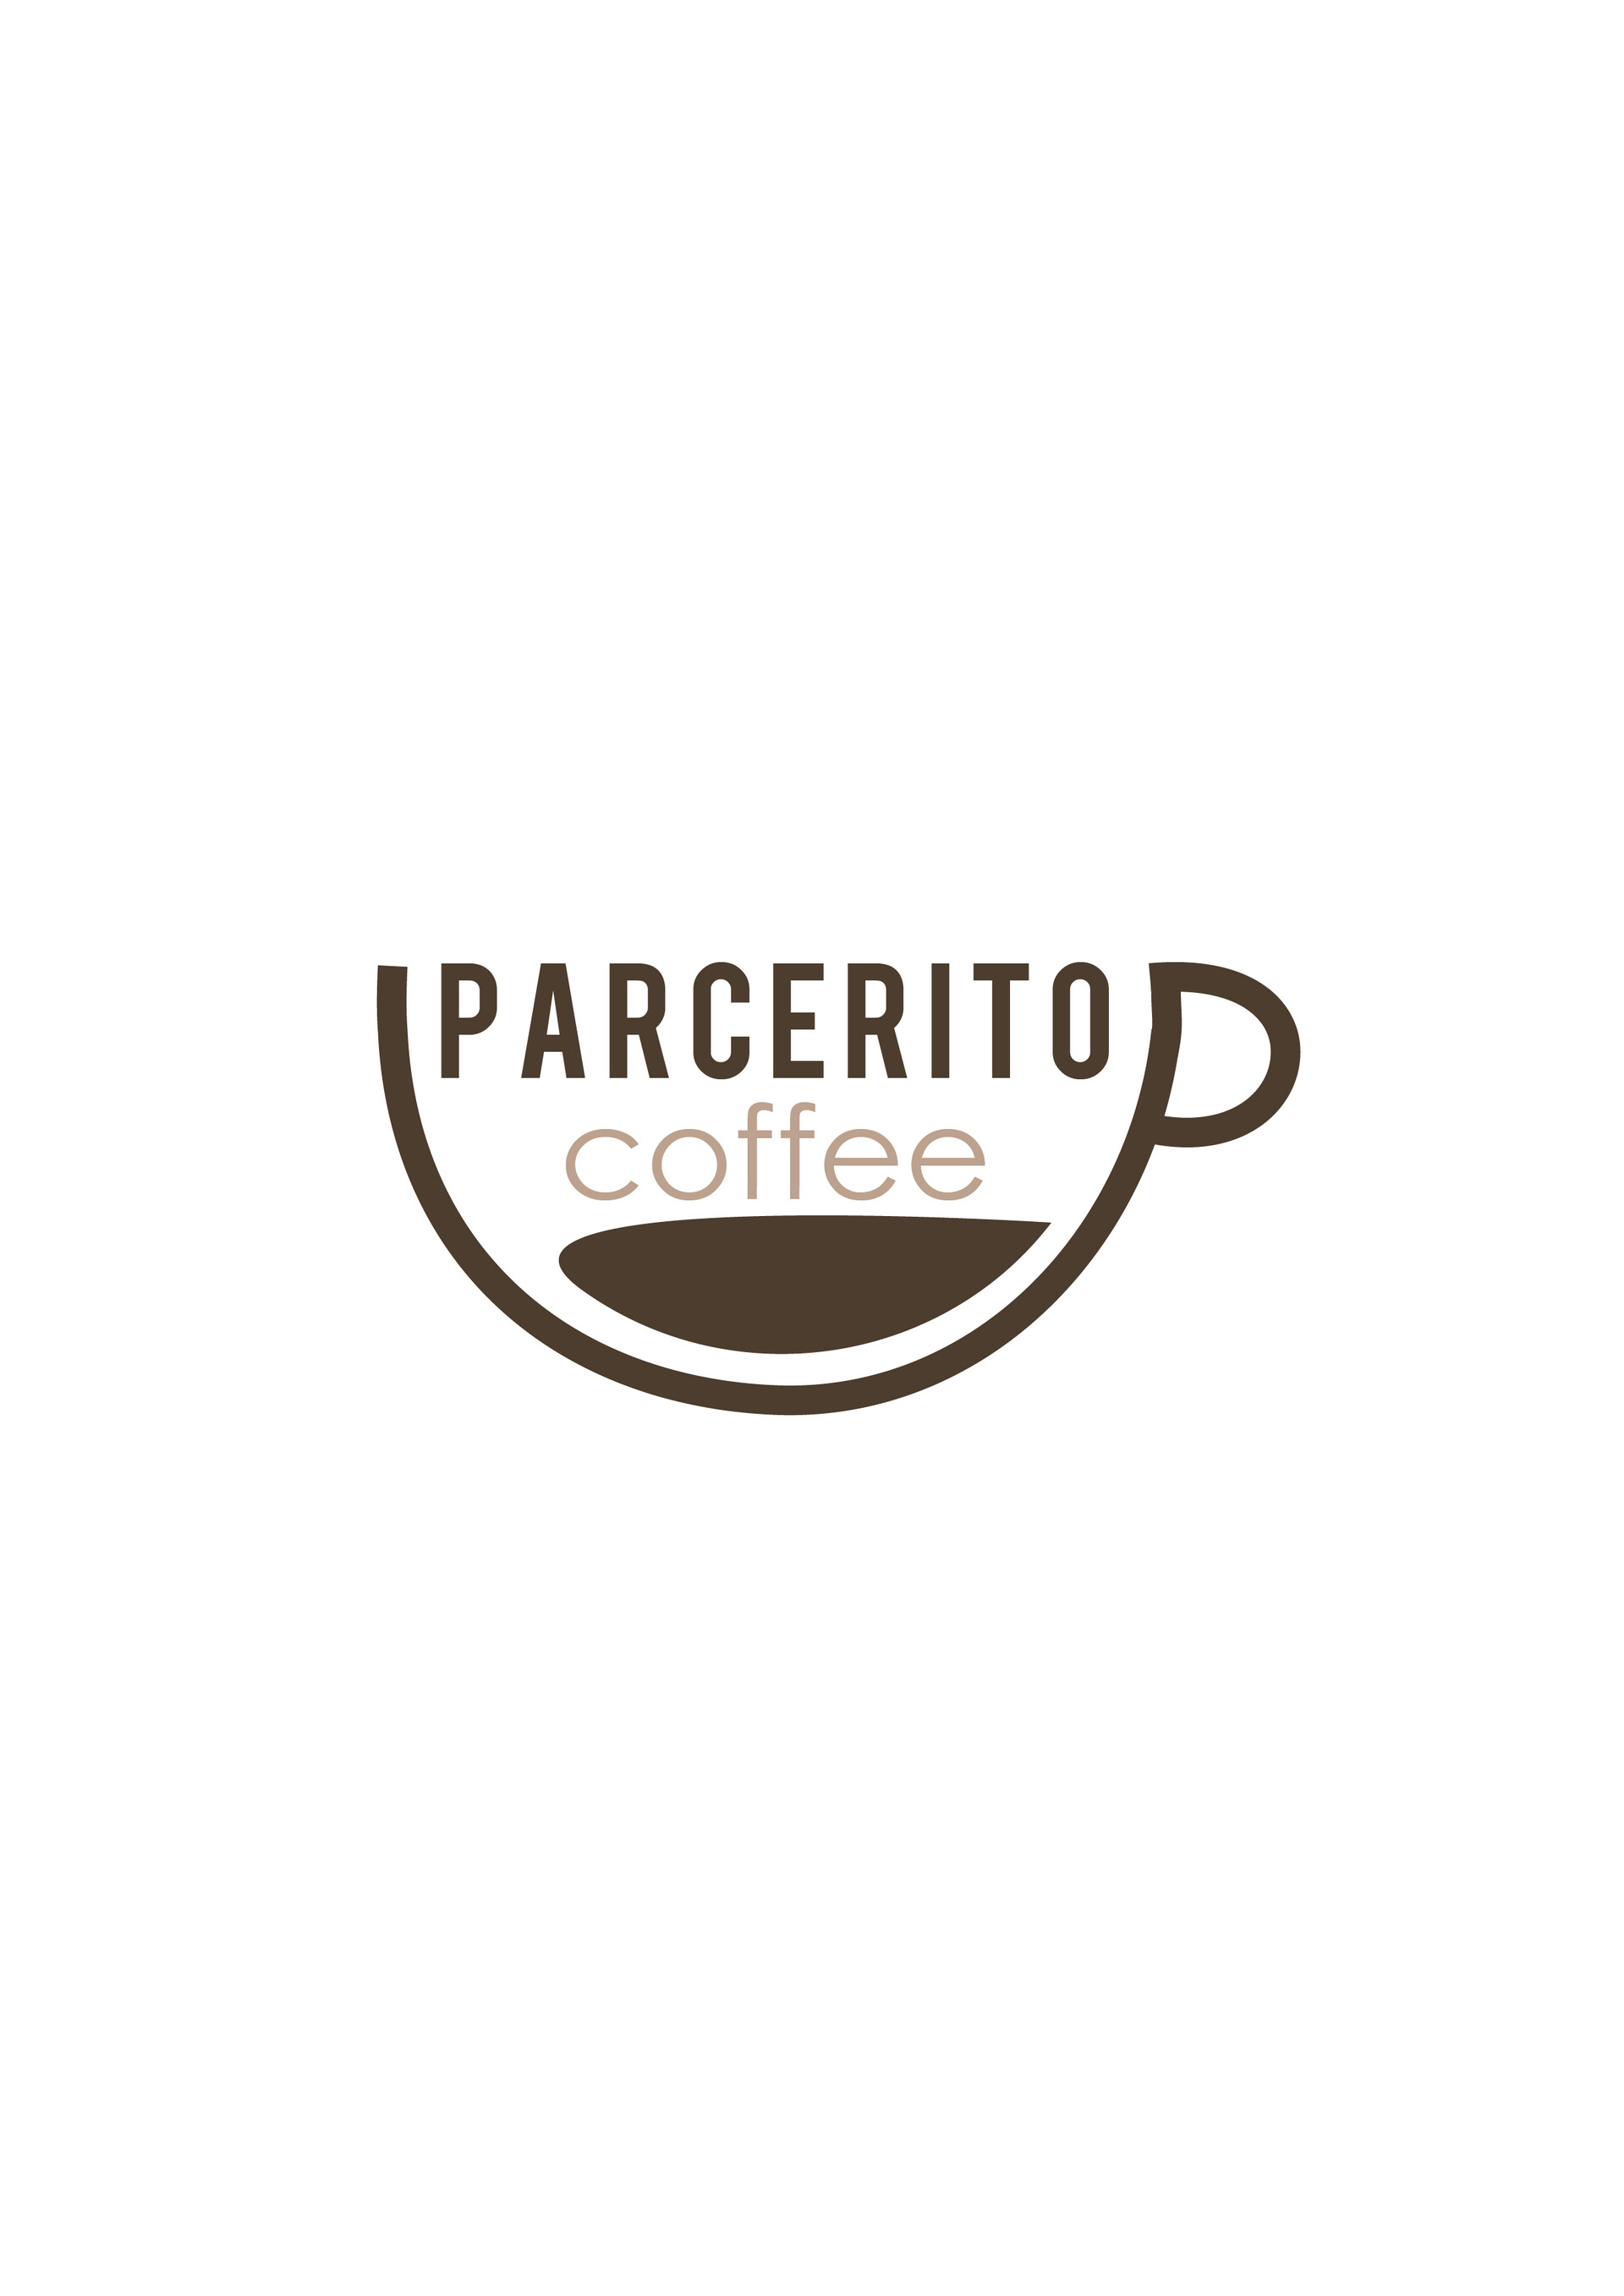 ArtStation - Diseño logotipo Parcerito Coffee